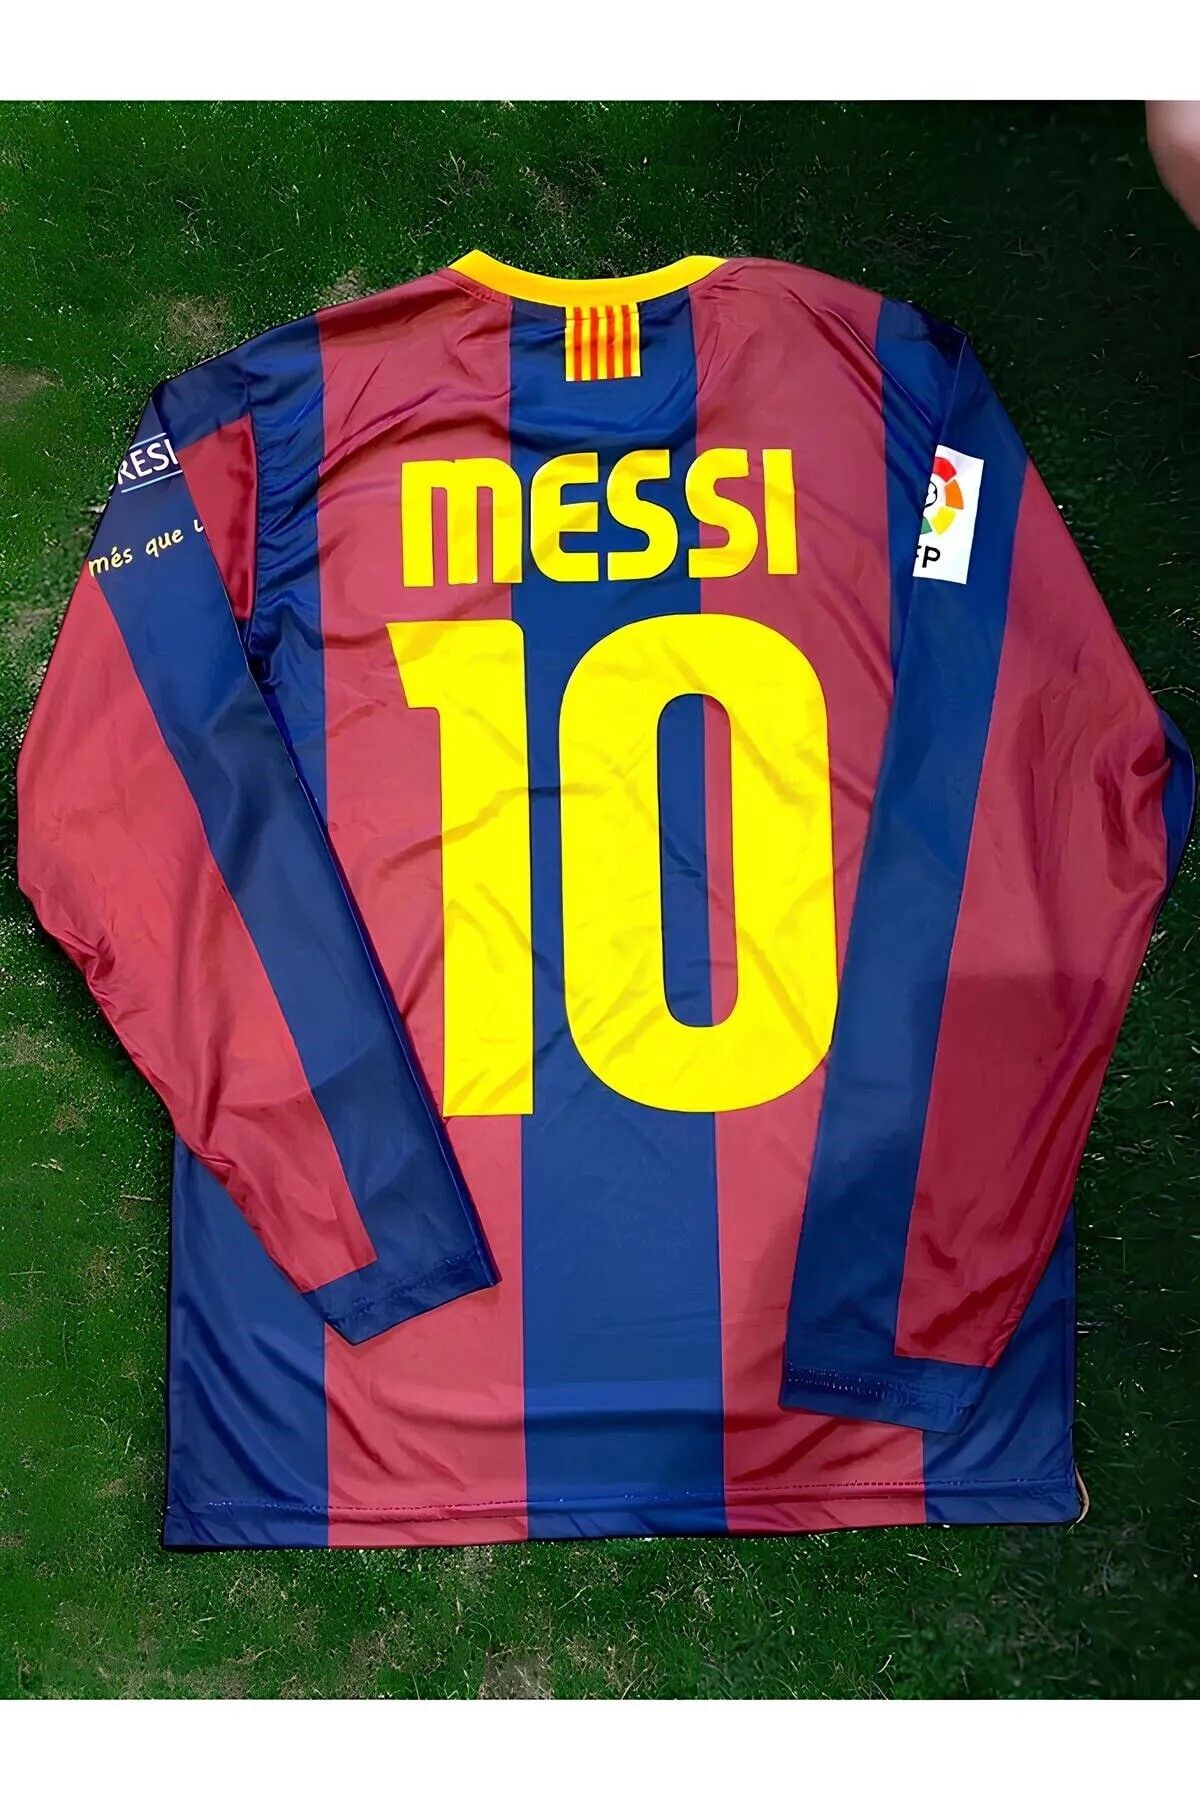 yenteks Uzun Kol Messi Barcelona 2011 Sezon Finali Yetişkin Futbol Forması